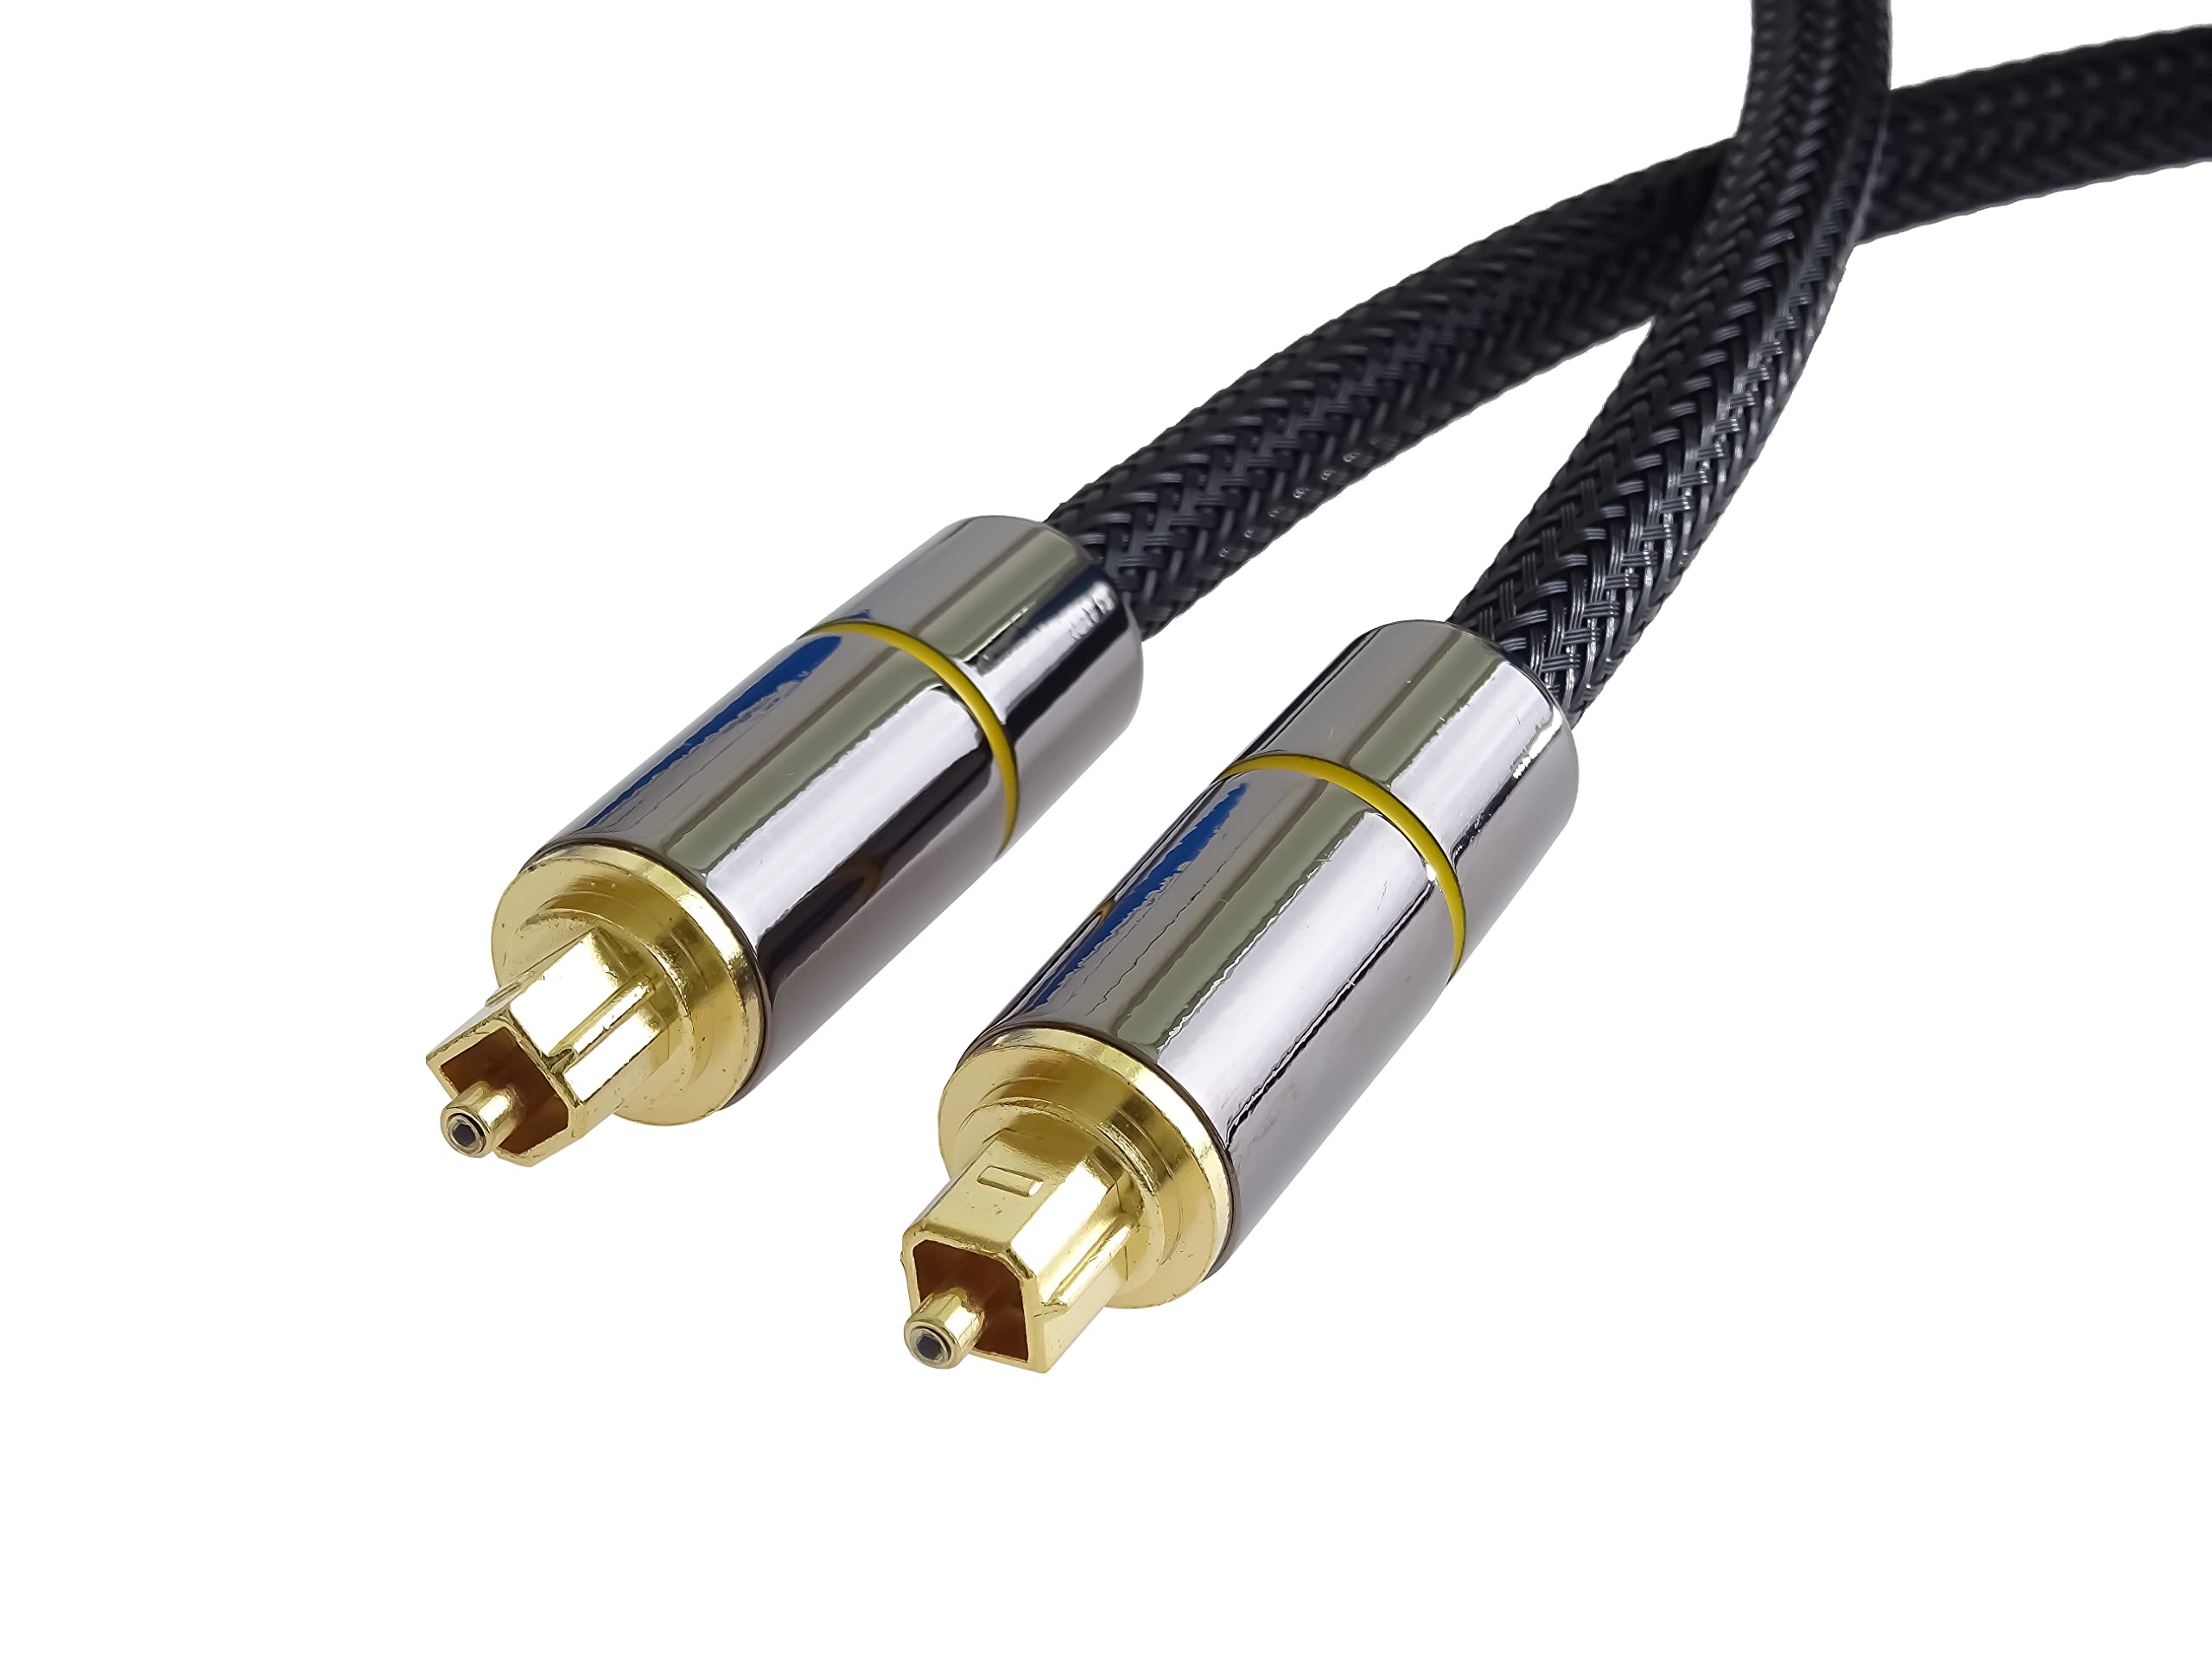 acheter PremiumCord Audio optique Toslink 1 M Cable, connecteur de bouchon Toslink, câble numérique pour la télévision stéréo Hi-Fi Soundable, HQ Audio, Metal Design + Nylon, noir, doré Vi0thqEMs en ligne